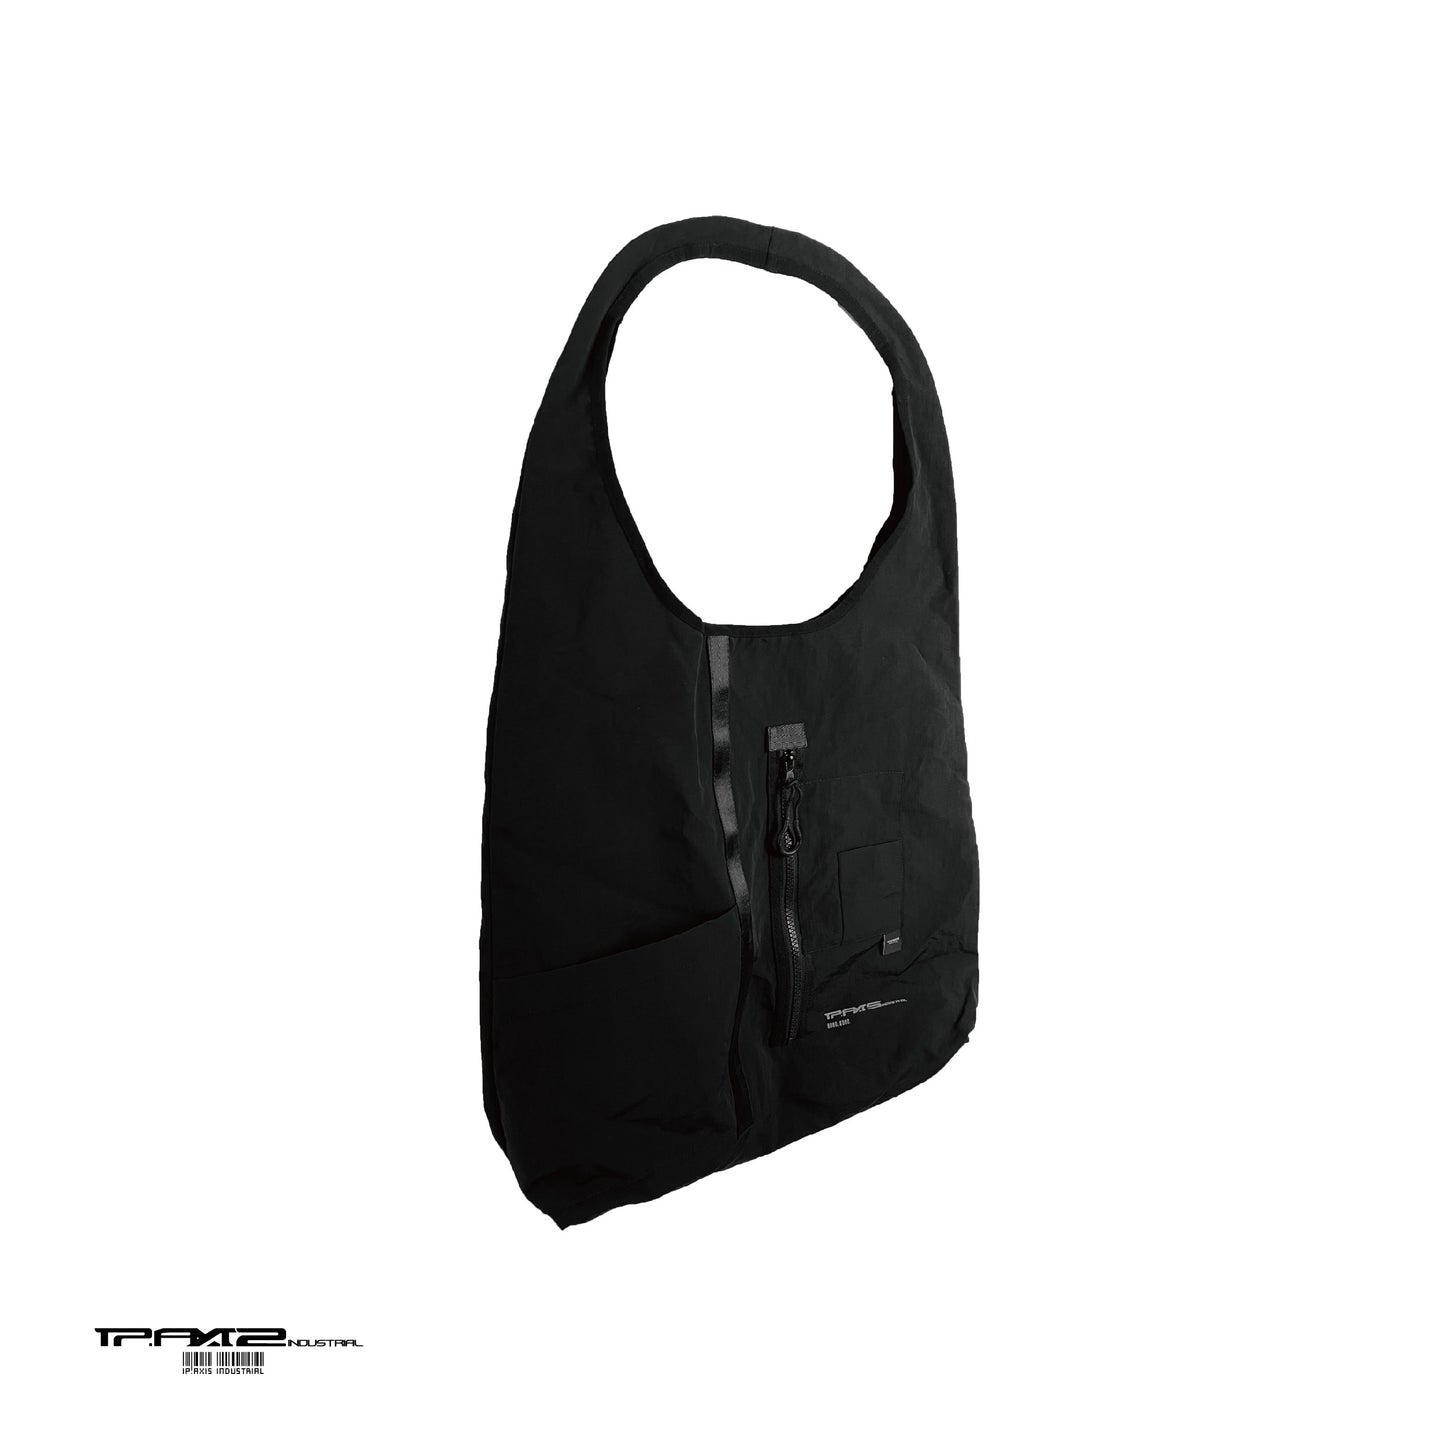 瓦黑色機能肩袋 Functional Tote bag